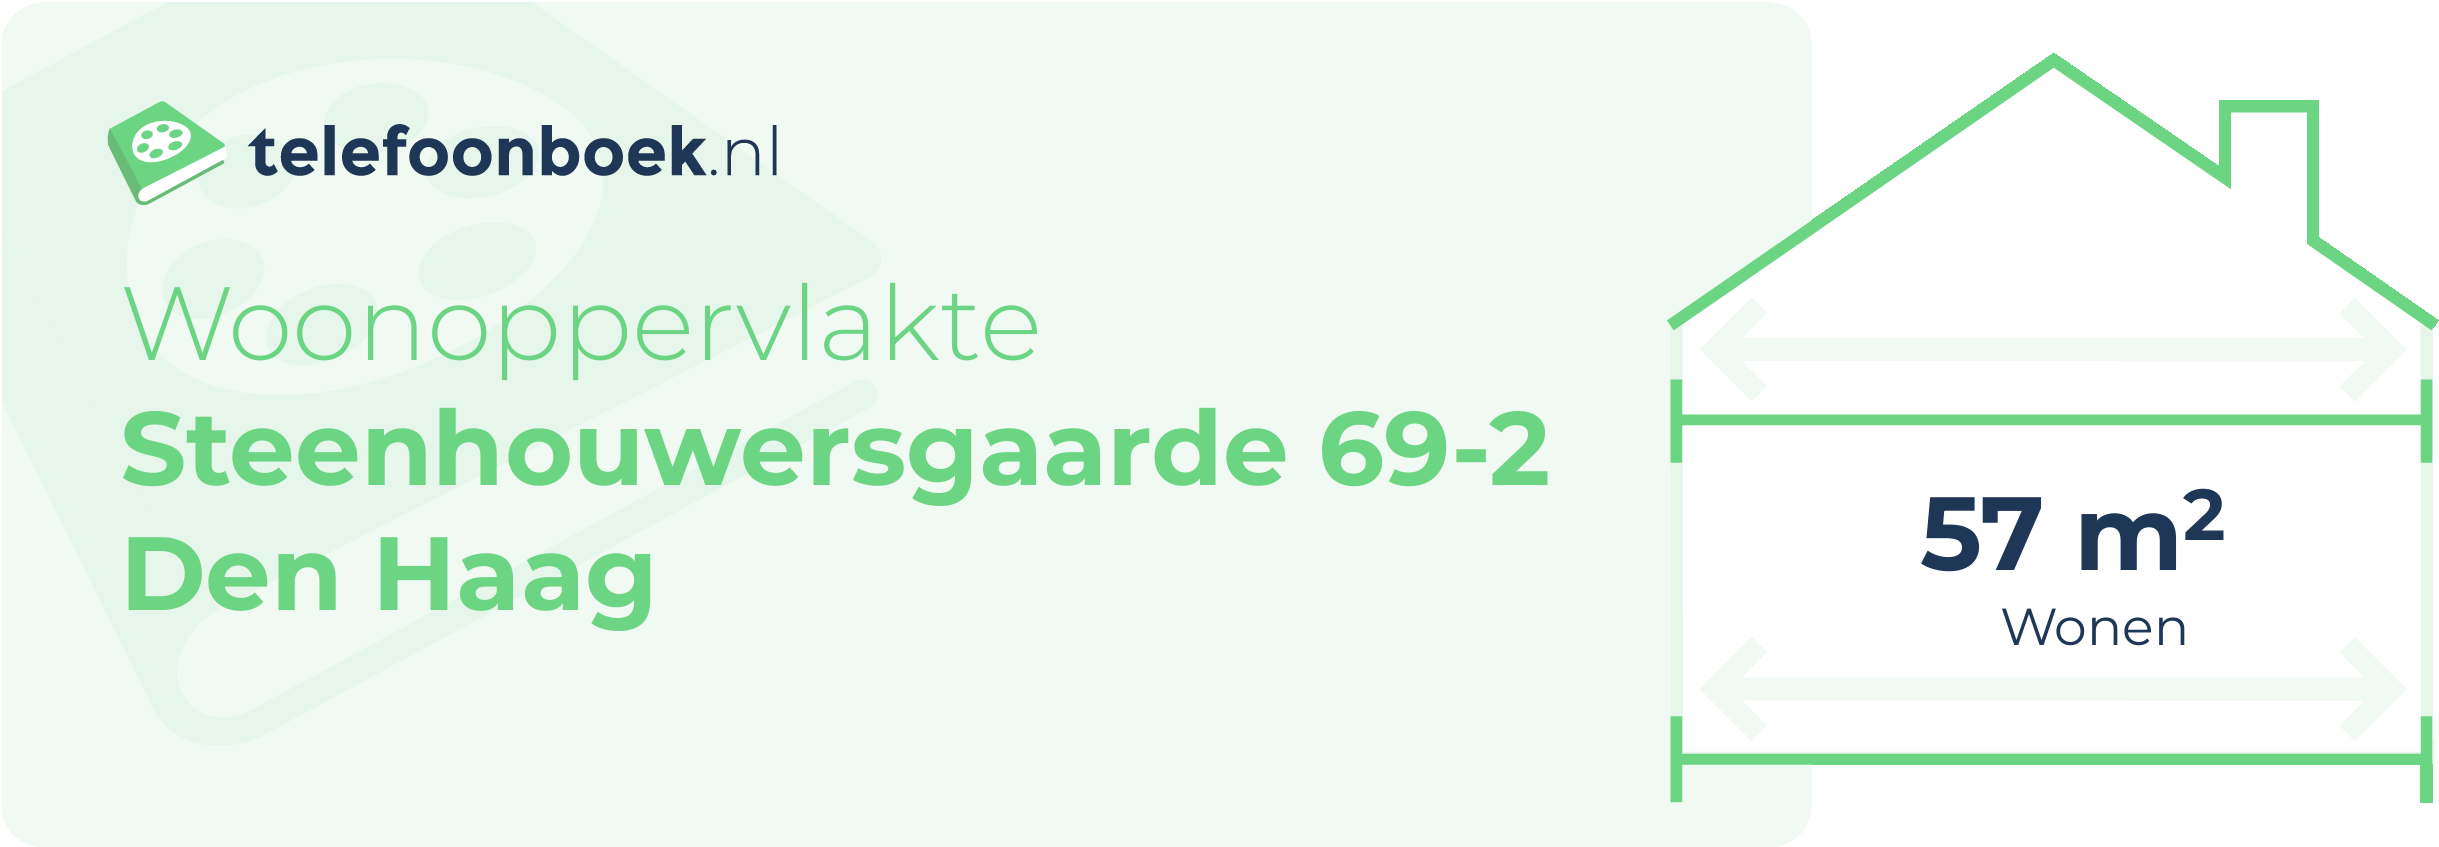 Woonoppervlakte Steenhouwersgaarde 69-2 Den Haag